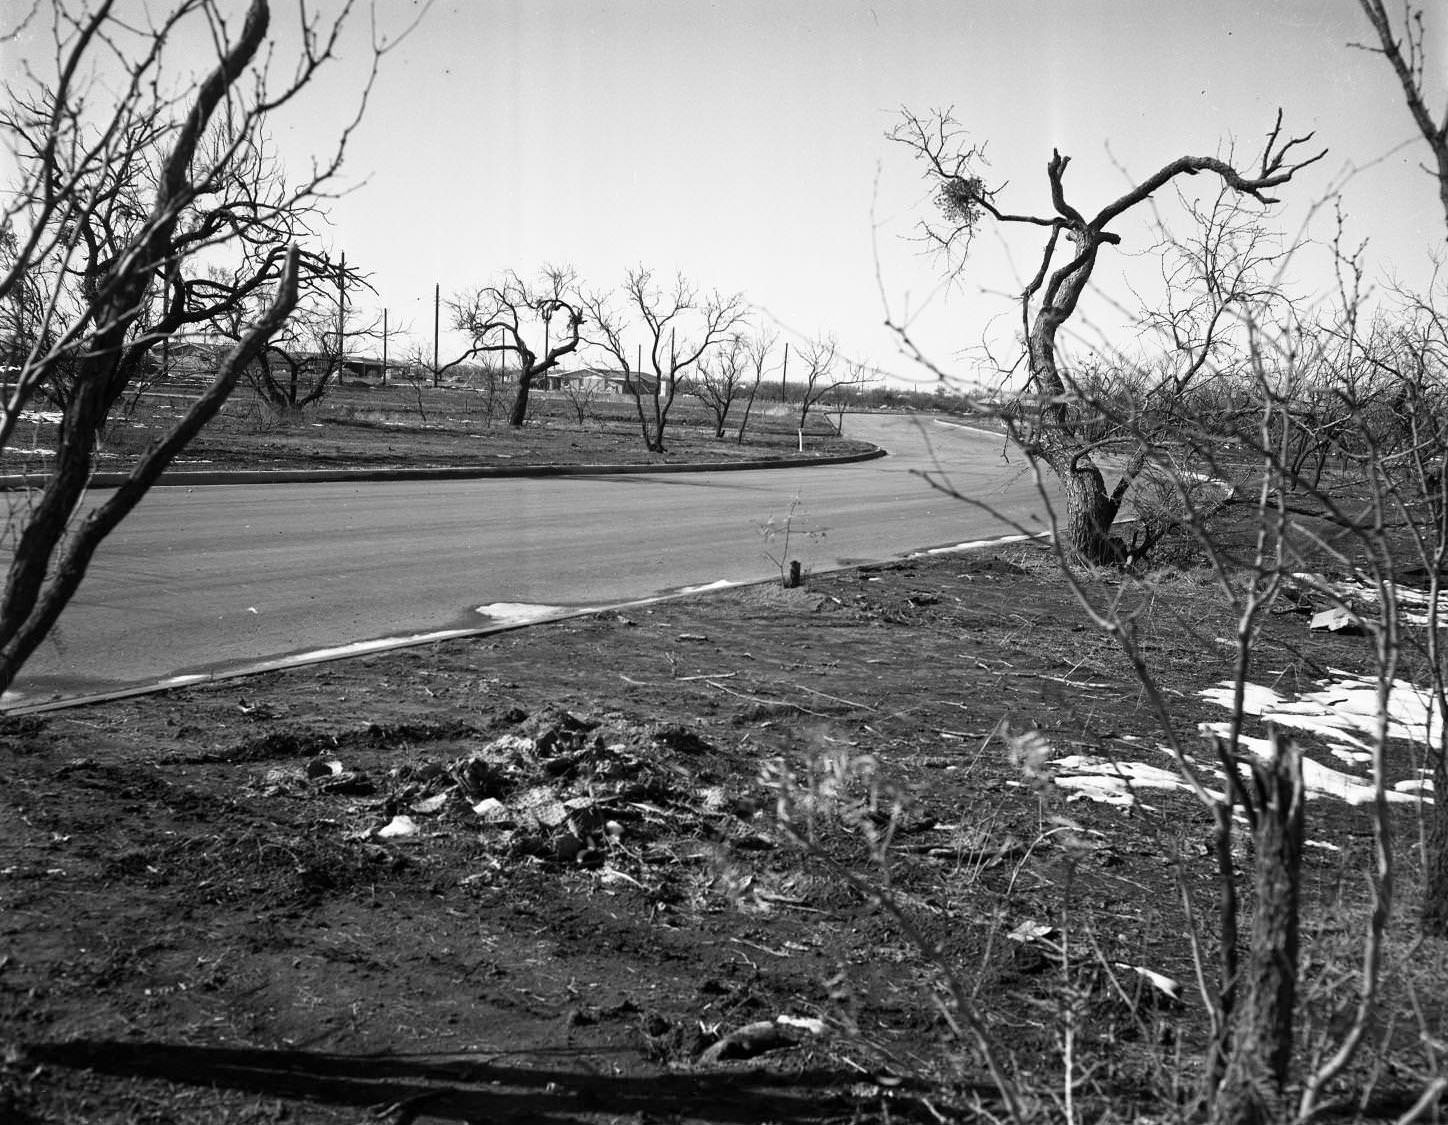 River Oaks Residential Neighborhood, 1955